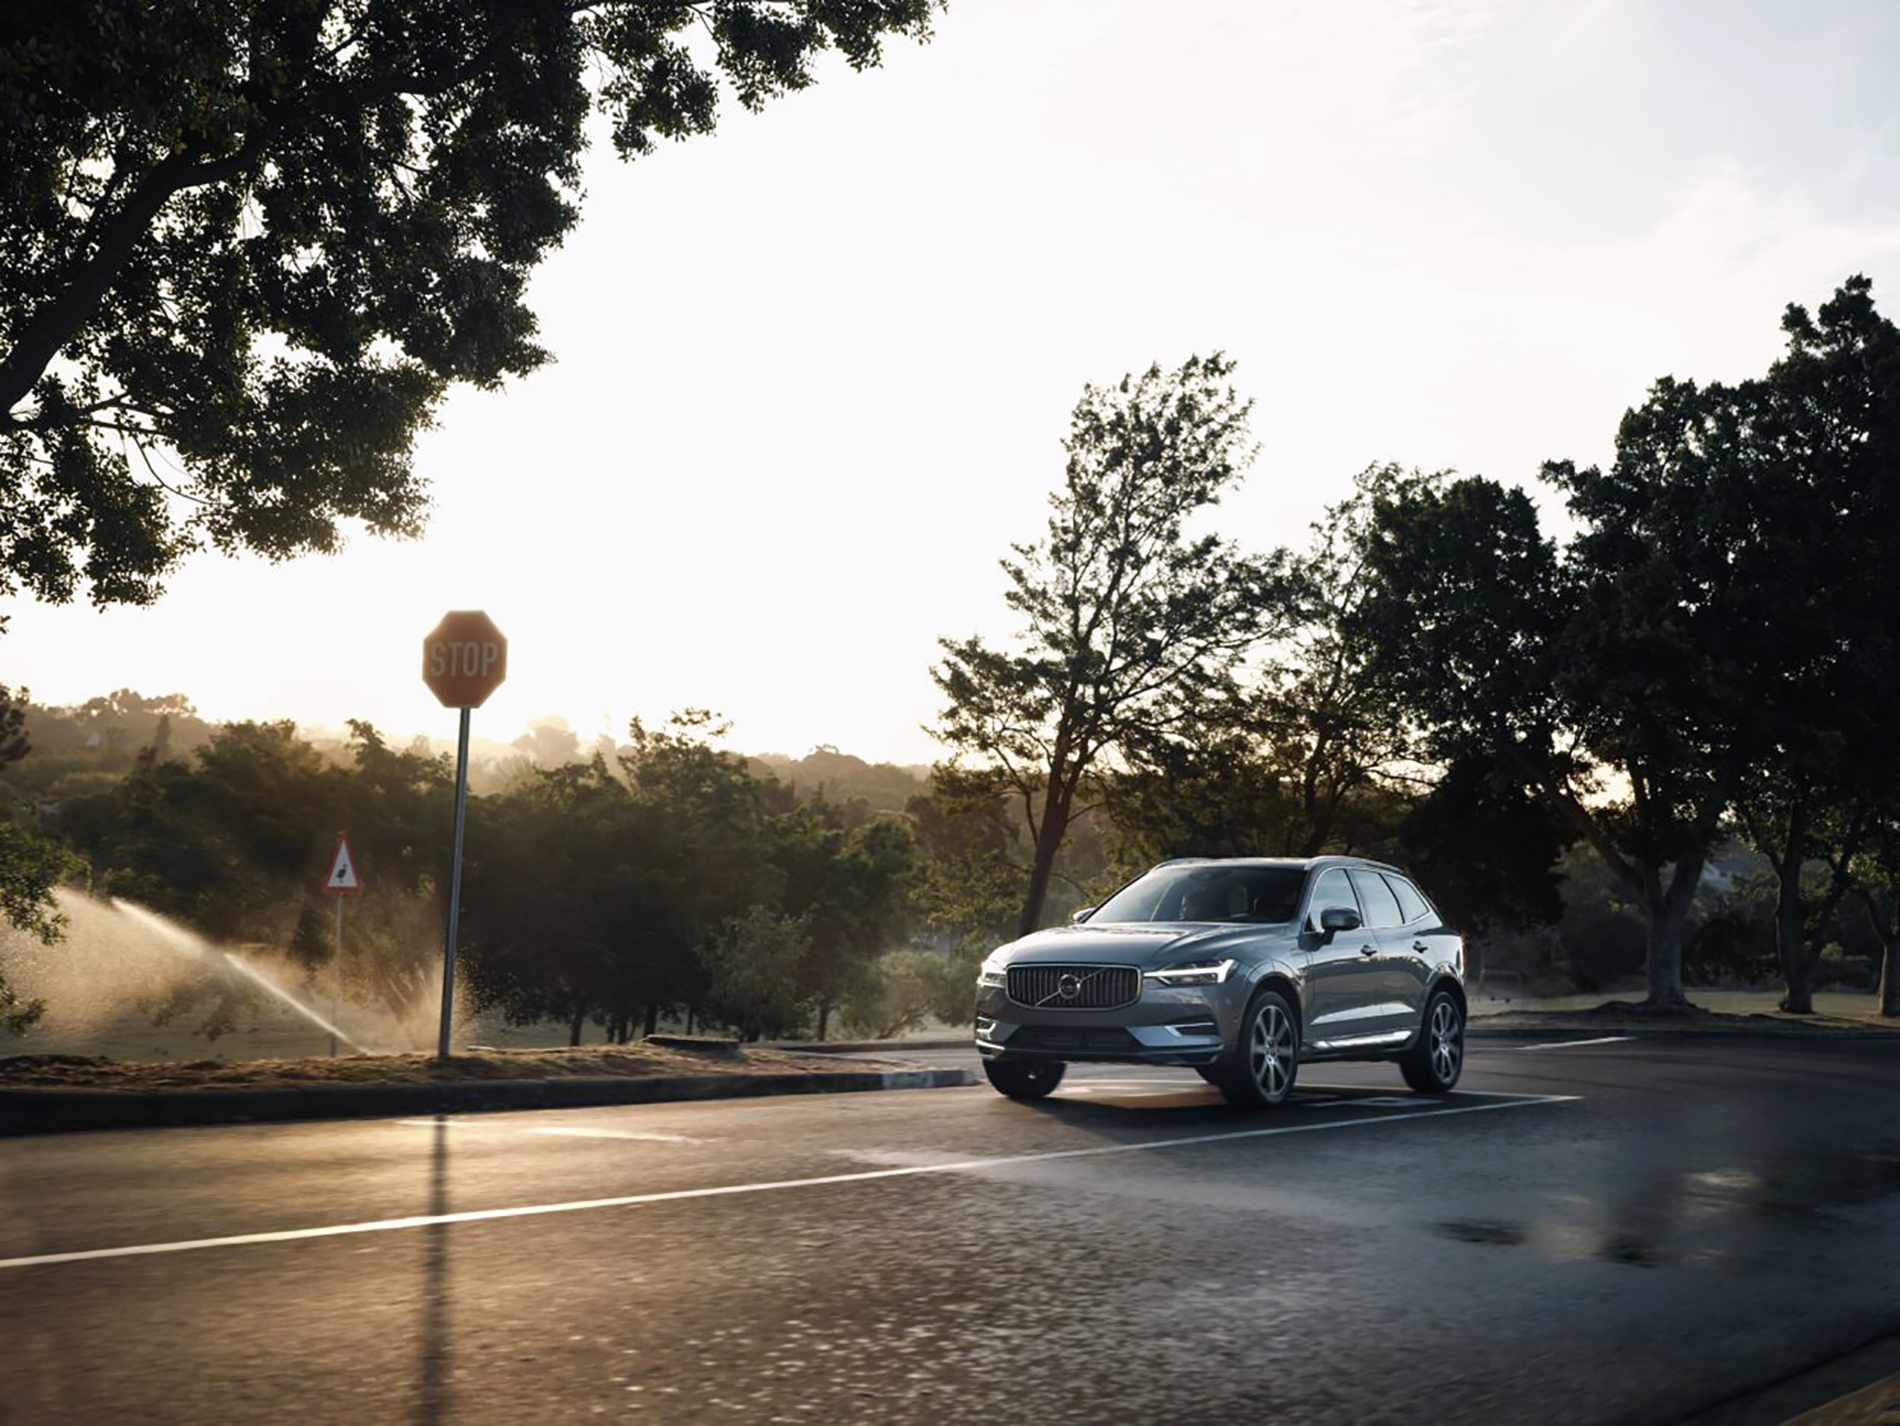 Nowa kampania Volvo Car Poland: XC60 za 850 zł netto miesięcznie